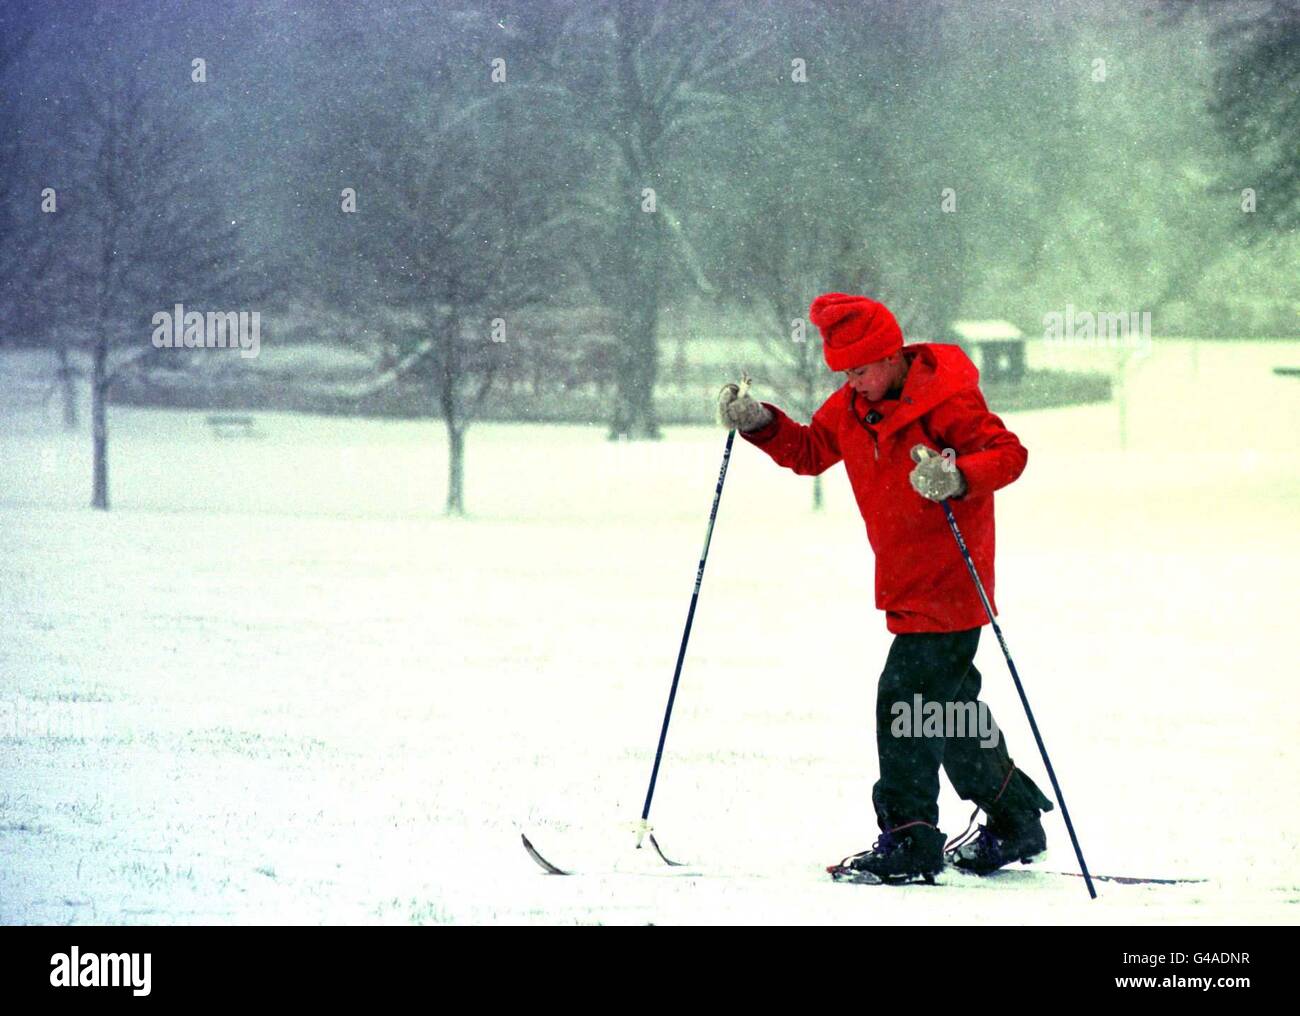 Le ski est devenu le meilleur moyen de voyager, à Édimbourg, alors que la neige s'étendait aujourd'hui à travers les frontières (lundi). Voir PA Story MÉTÉO neige. Photo de David Cheskin. Banque D'Images